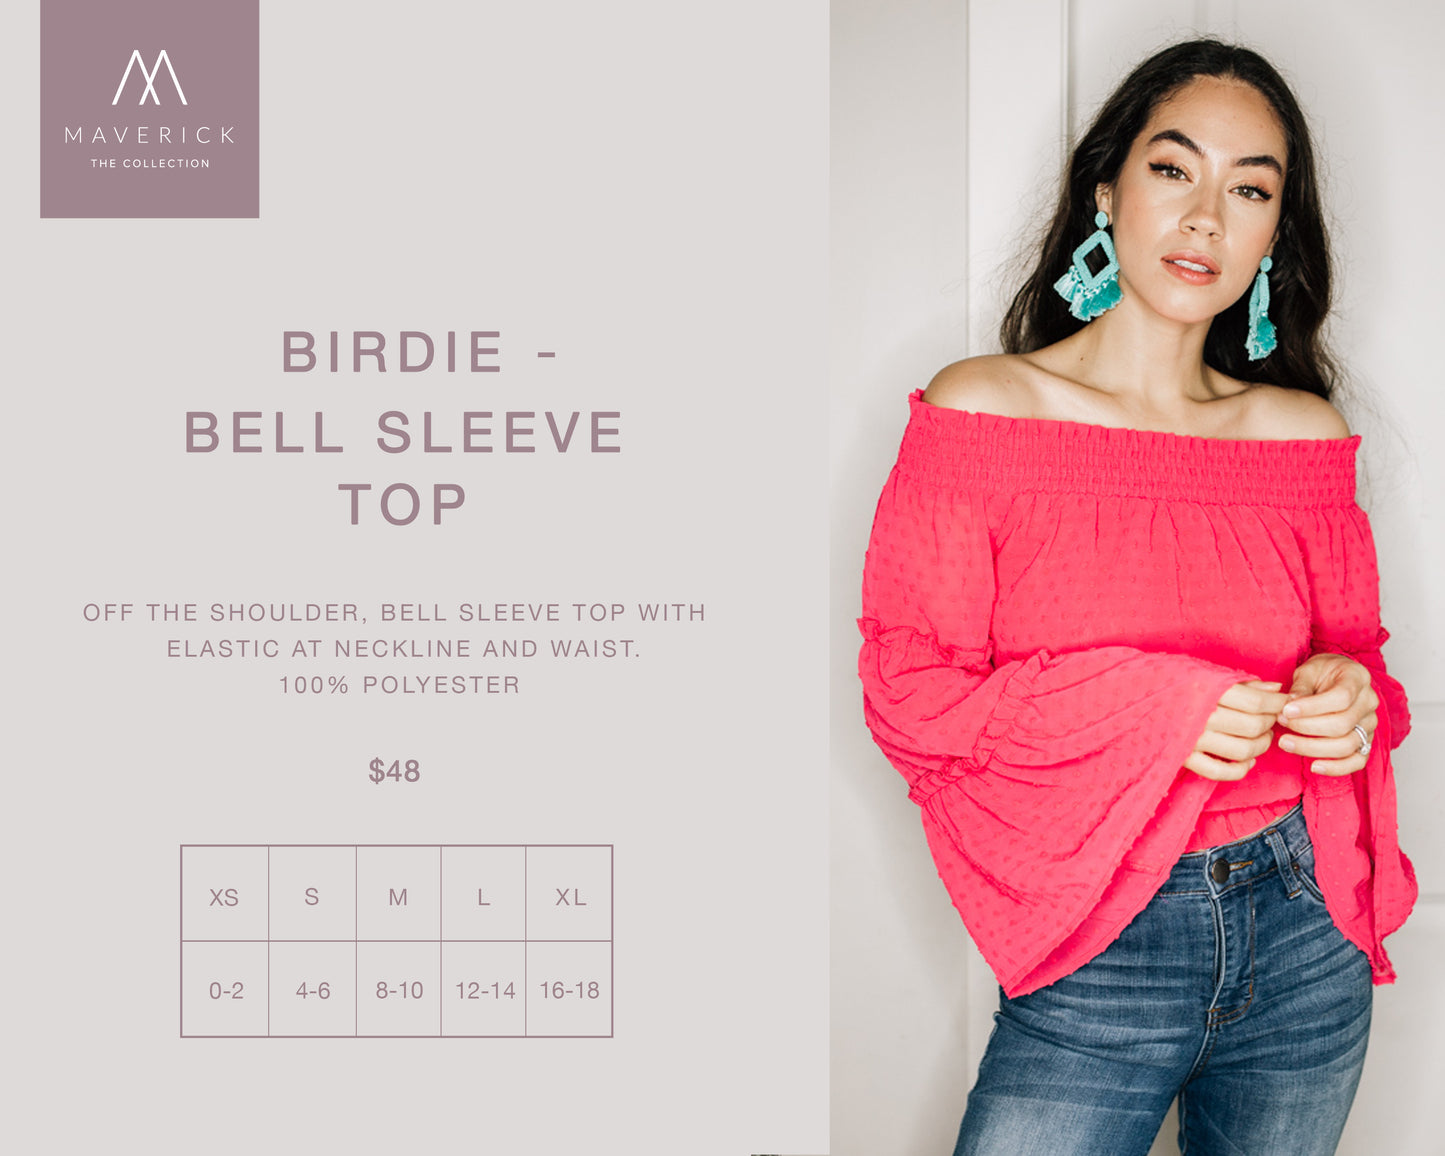 Birdie - Bell Sleeve Hot Pink Top